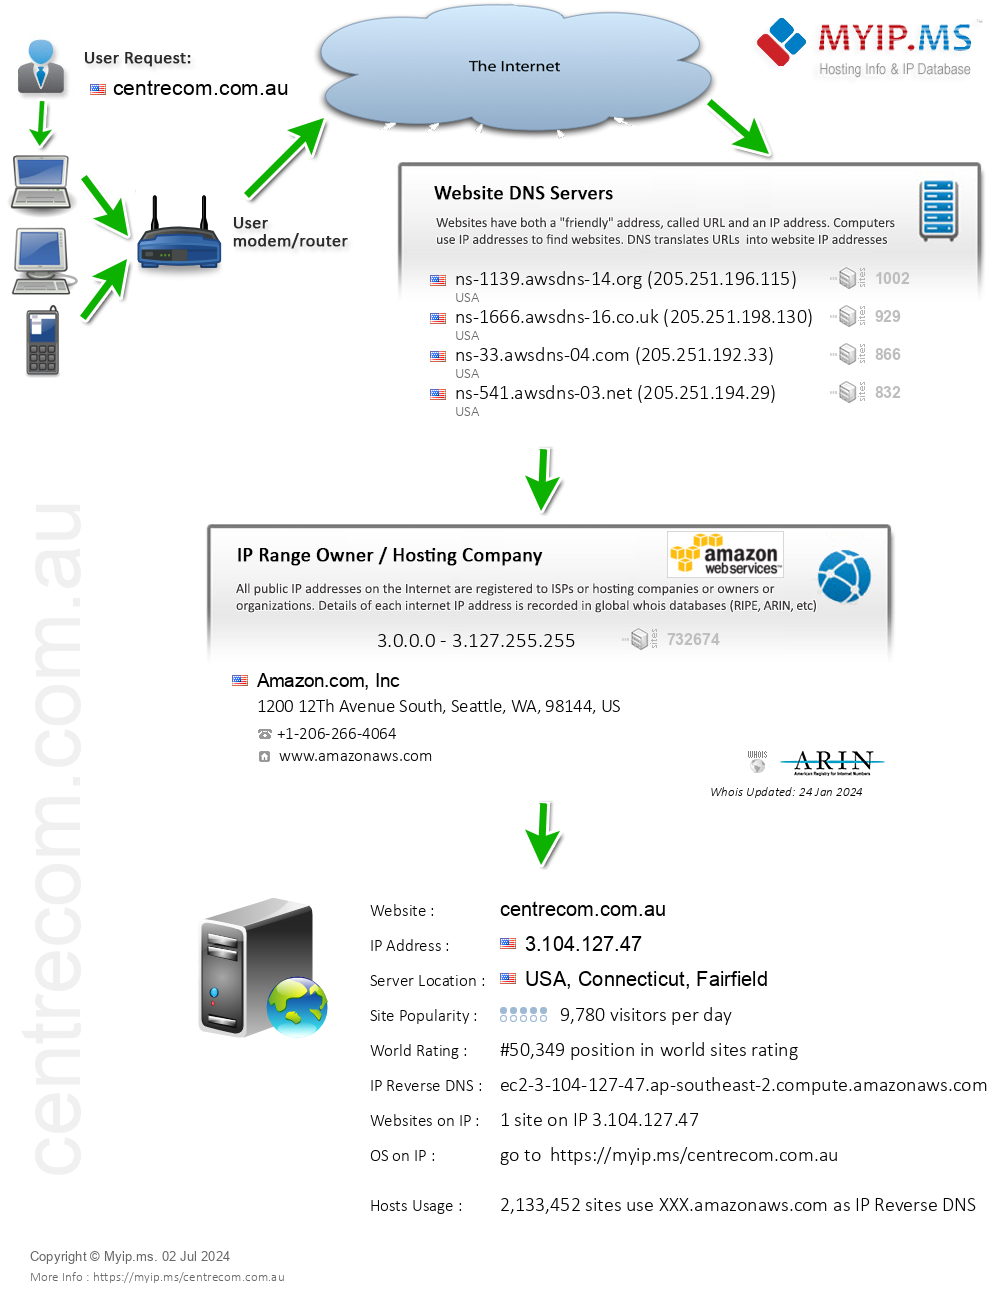 Centrecom.com.au - Website Hosting Visual IP Diagram